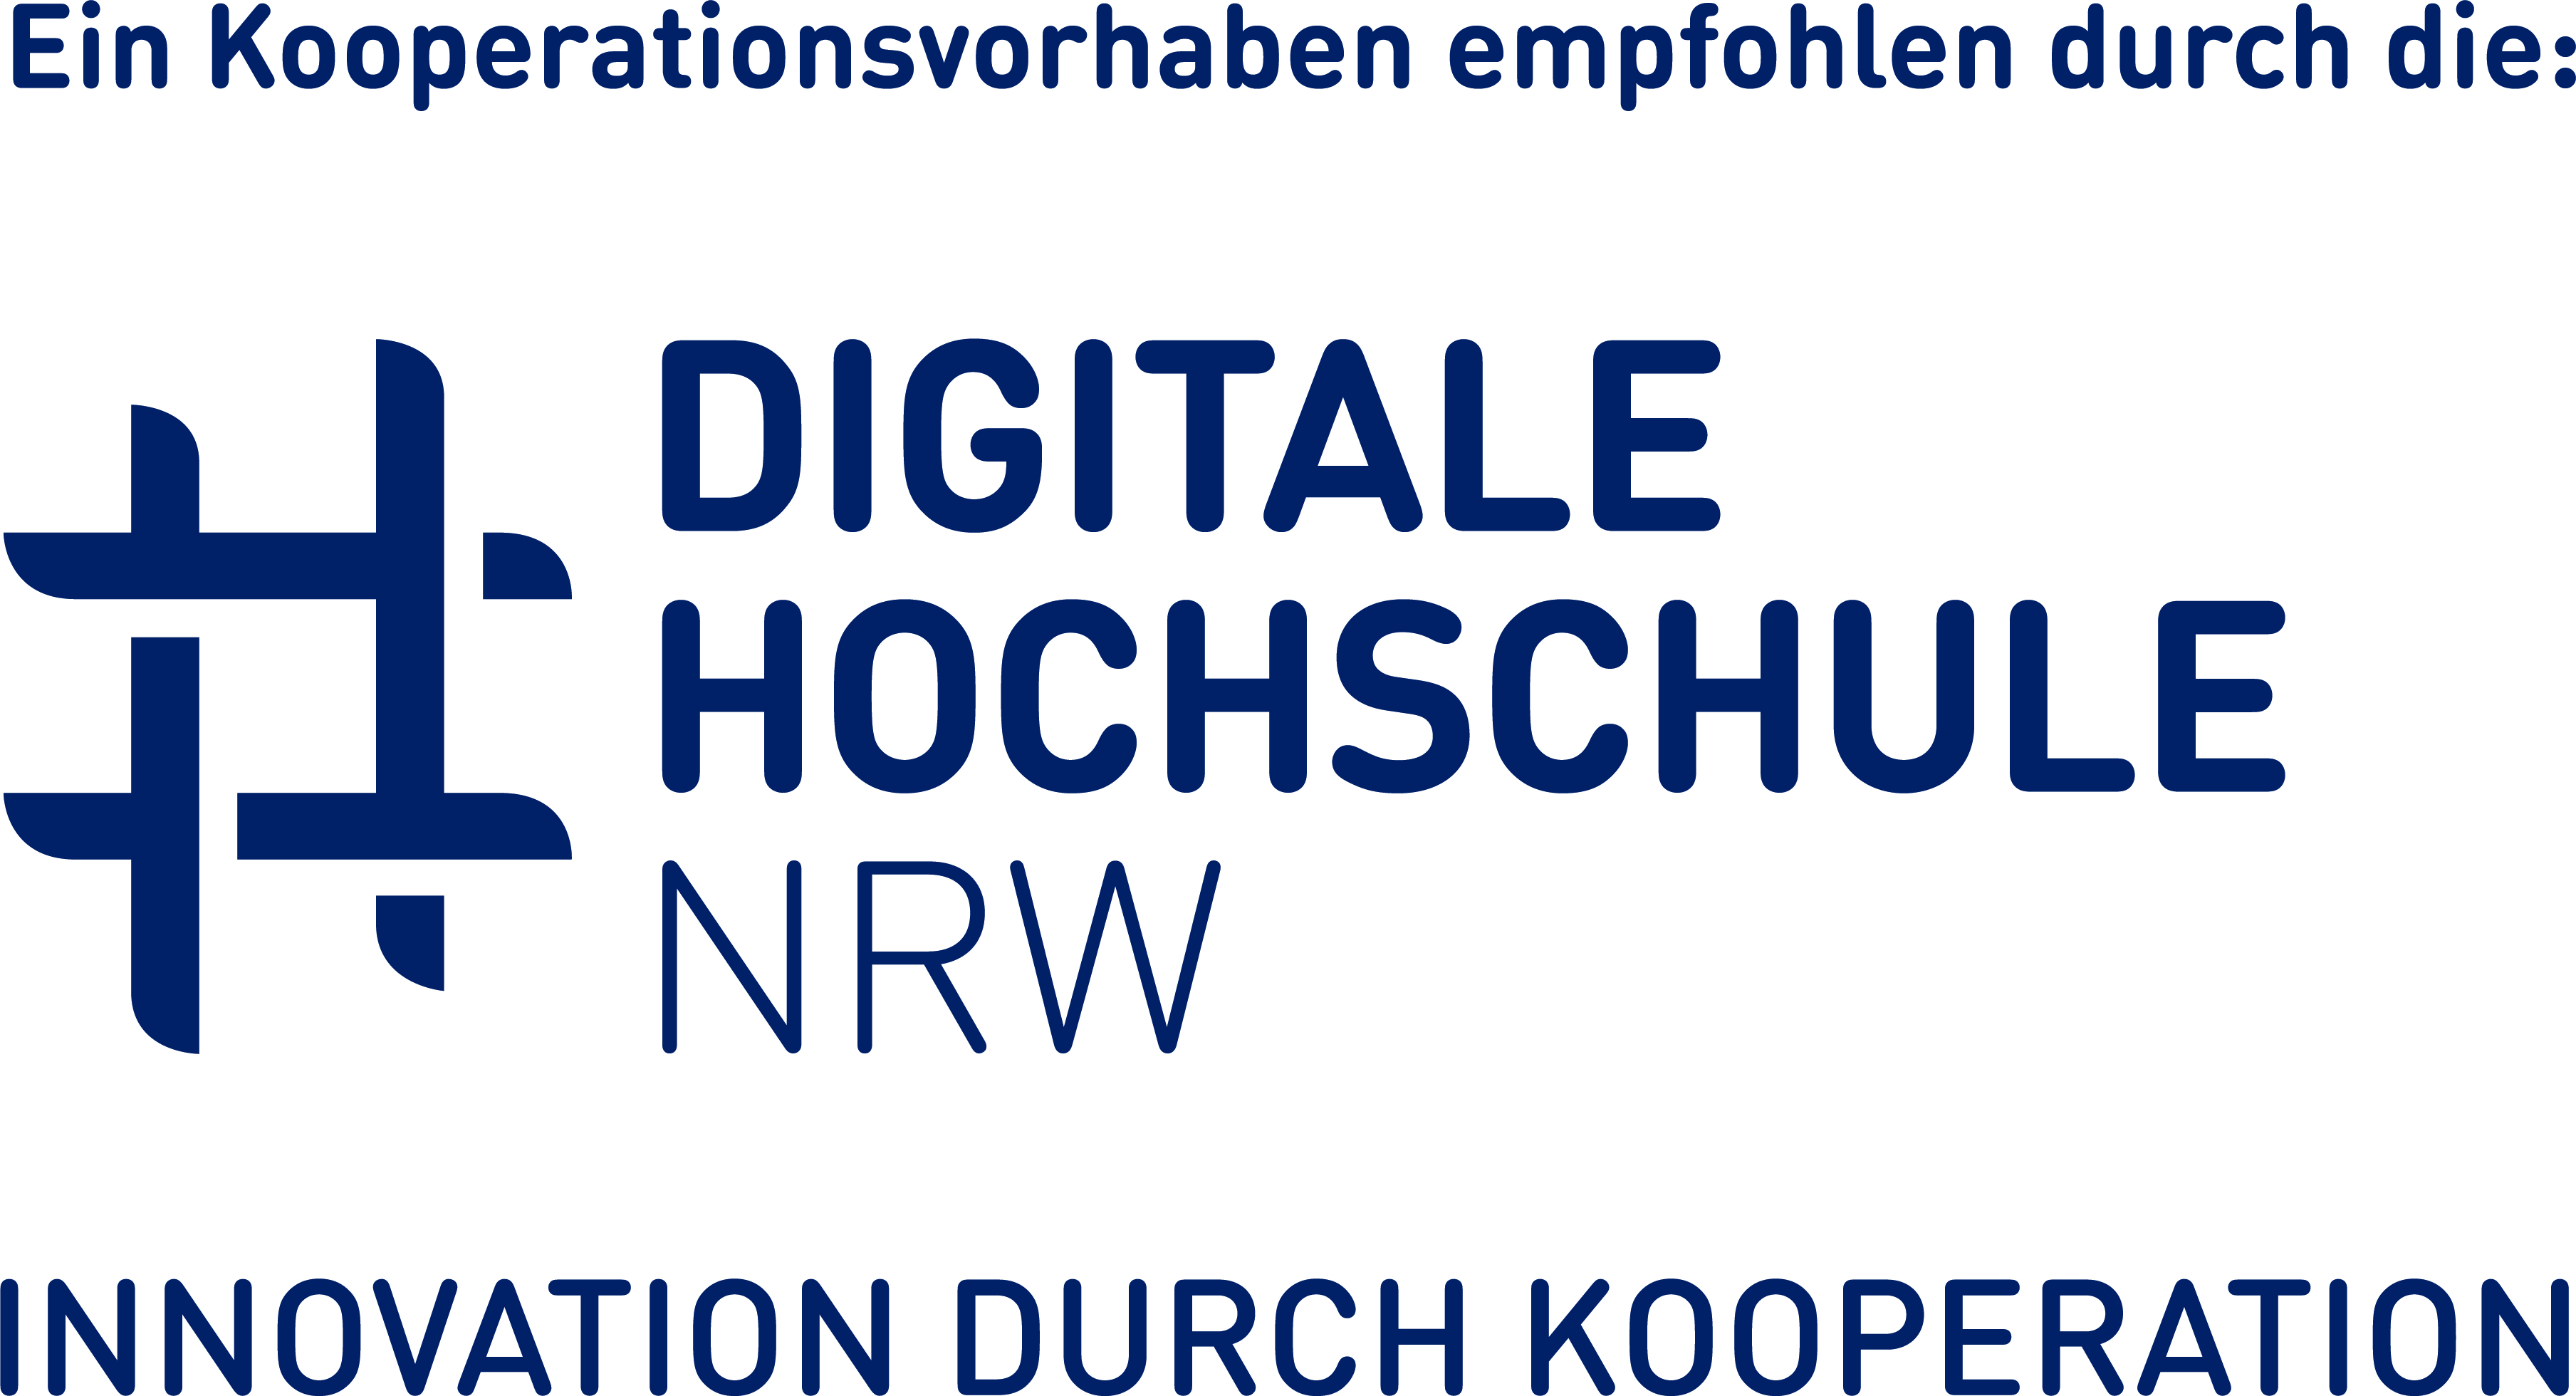 Ein Kooperationsvorhaben empfohlen durch die Digitale Hochschule NRW (Logo) Innovation durch Kooperation